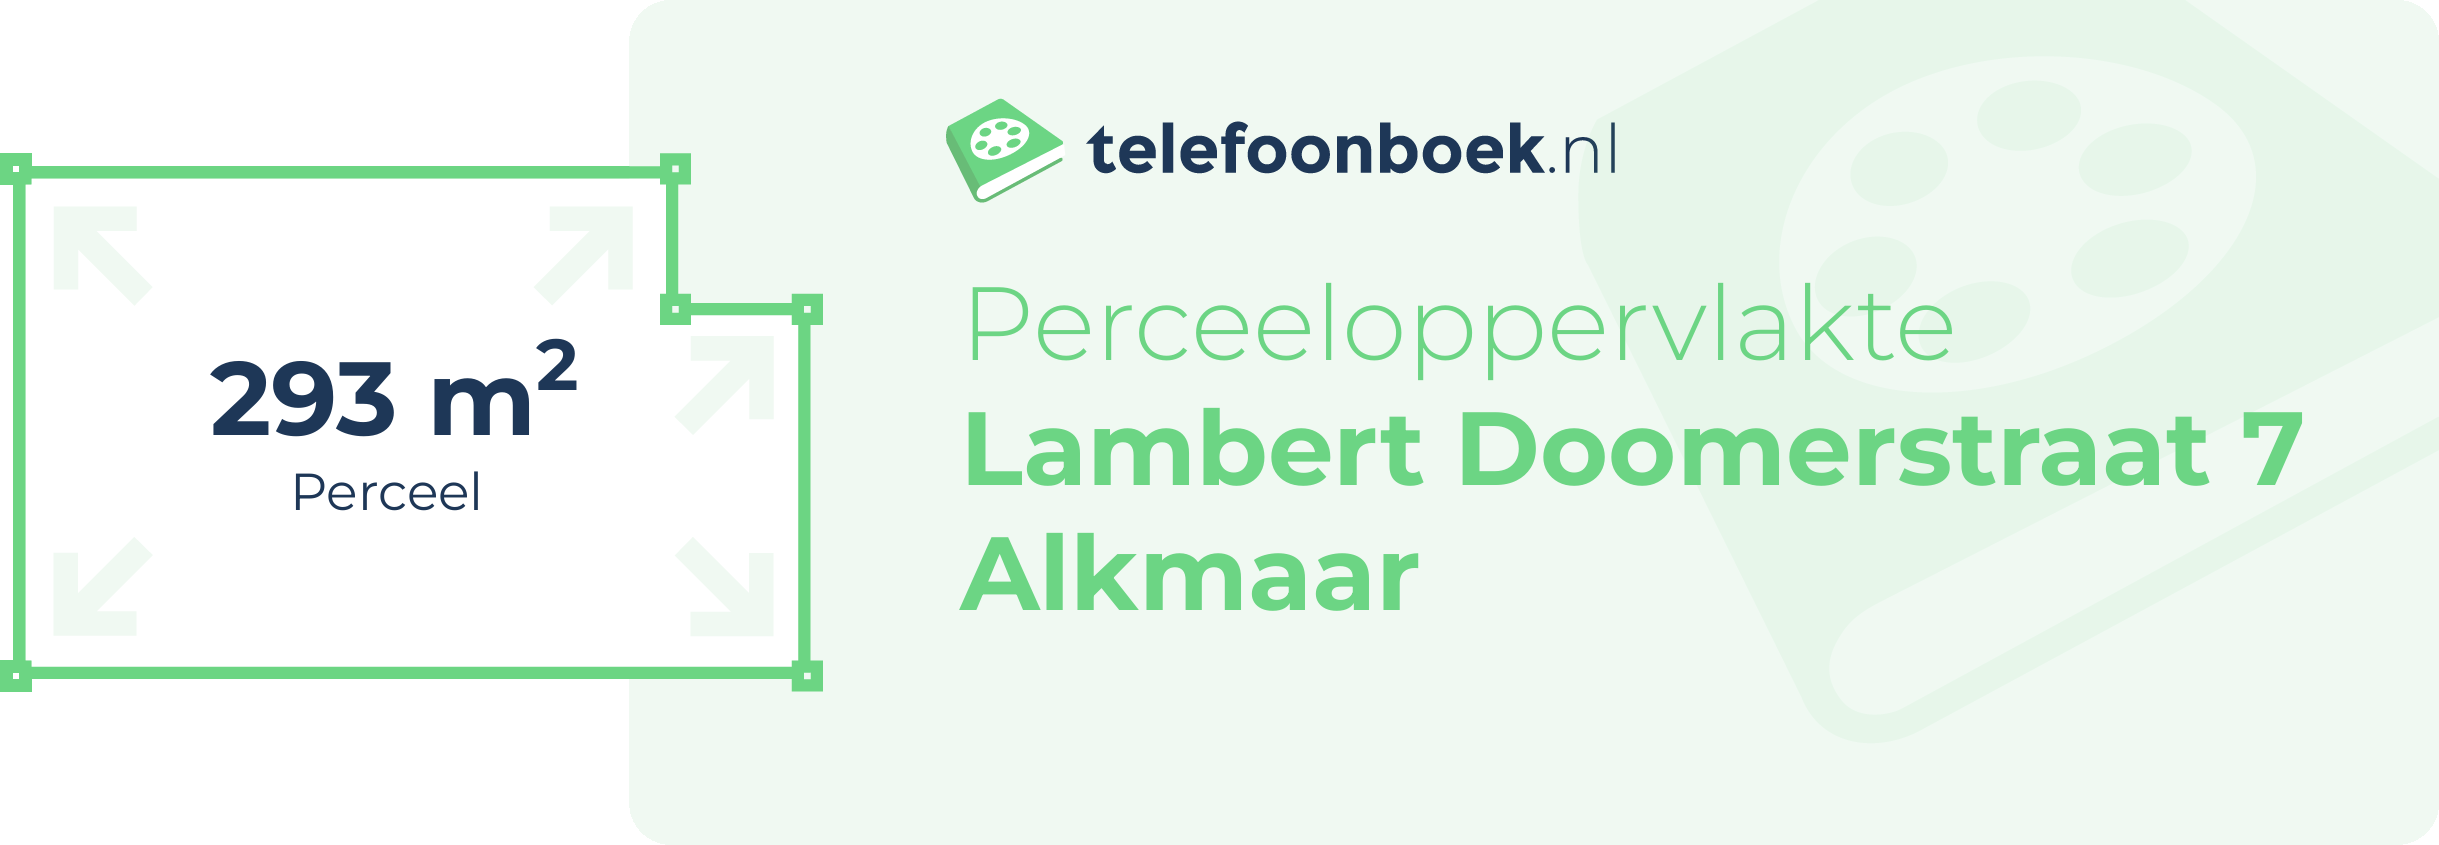 Perceeloppervlakte Lambert Doomerstraat 7 Alkmaar